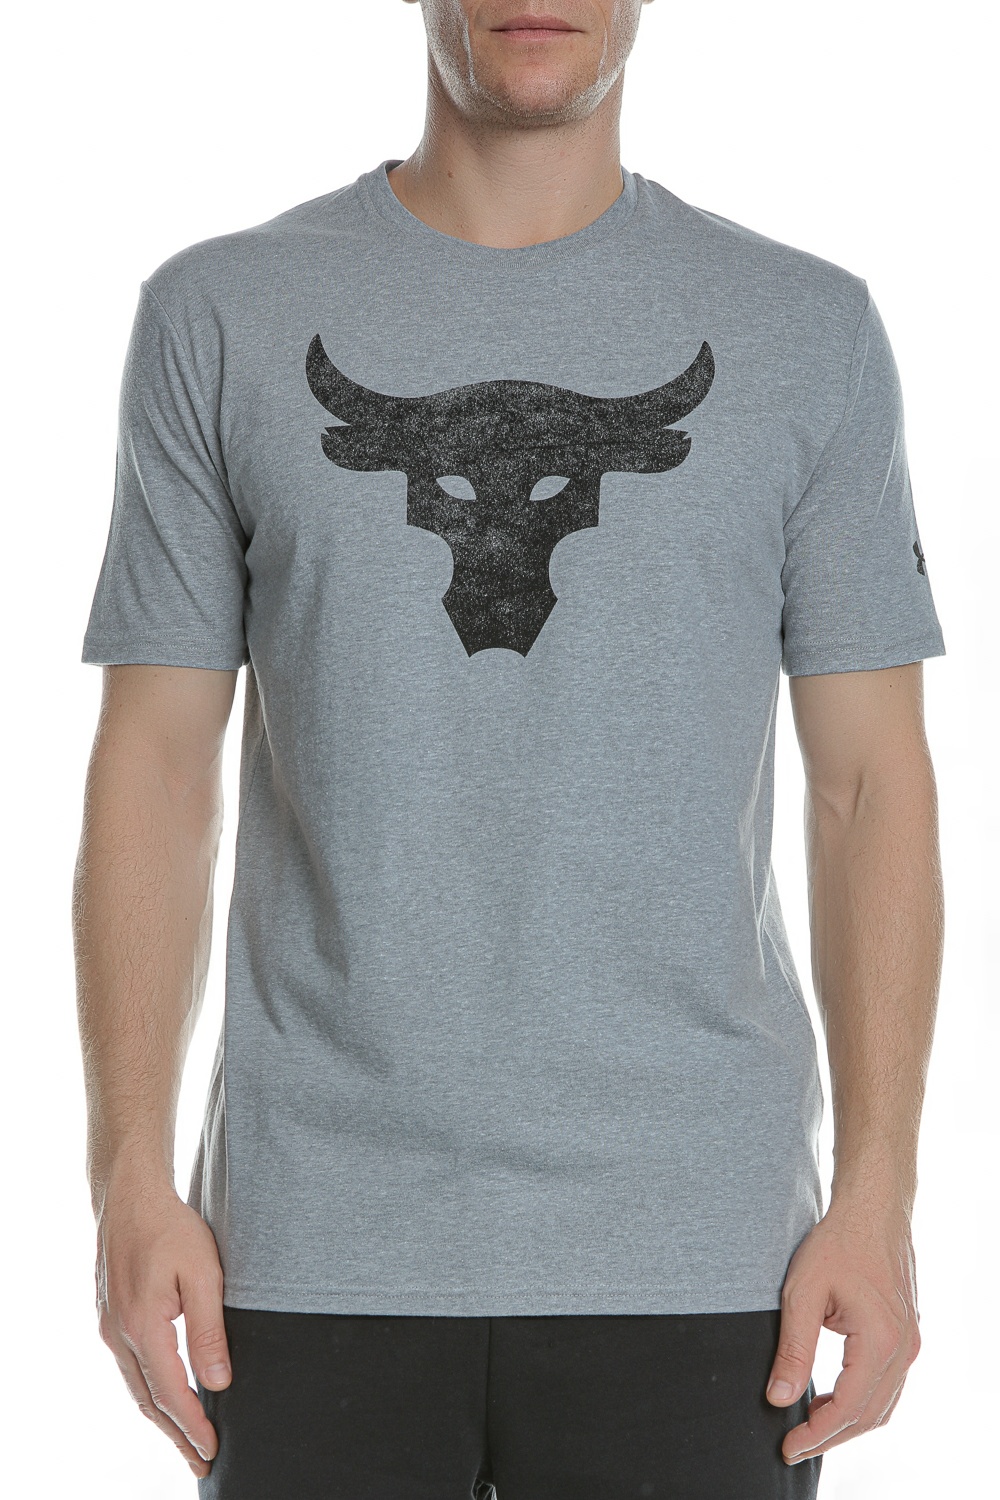 Ανδρικά/Ρούχα/Αθλητικά/T-shirt UNDER ARMOUR - Ανδρικό t-shirt UNDER ARMOUR Pjt Rock Brahma Bull SS T-S γκρι